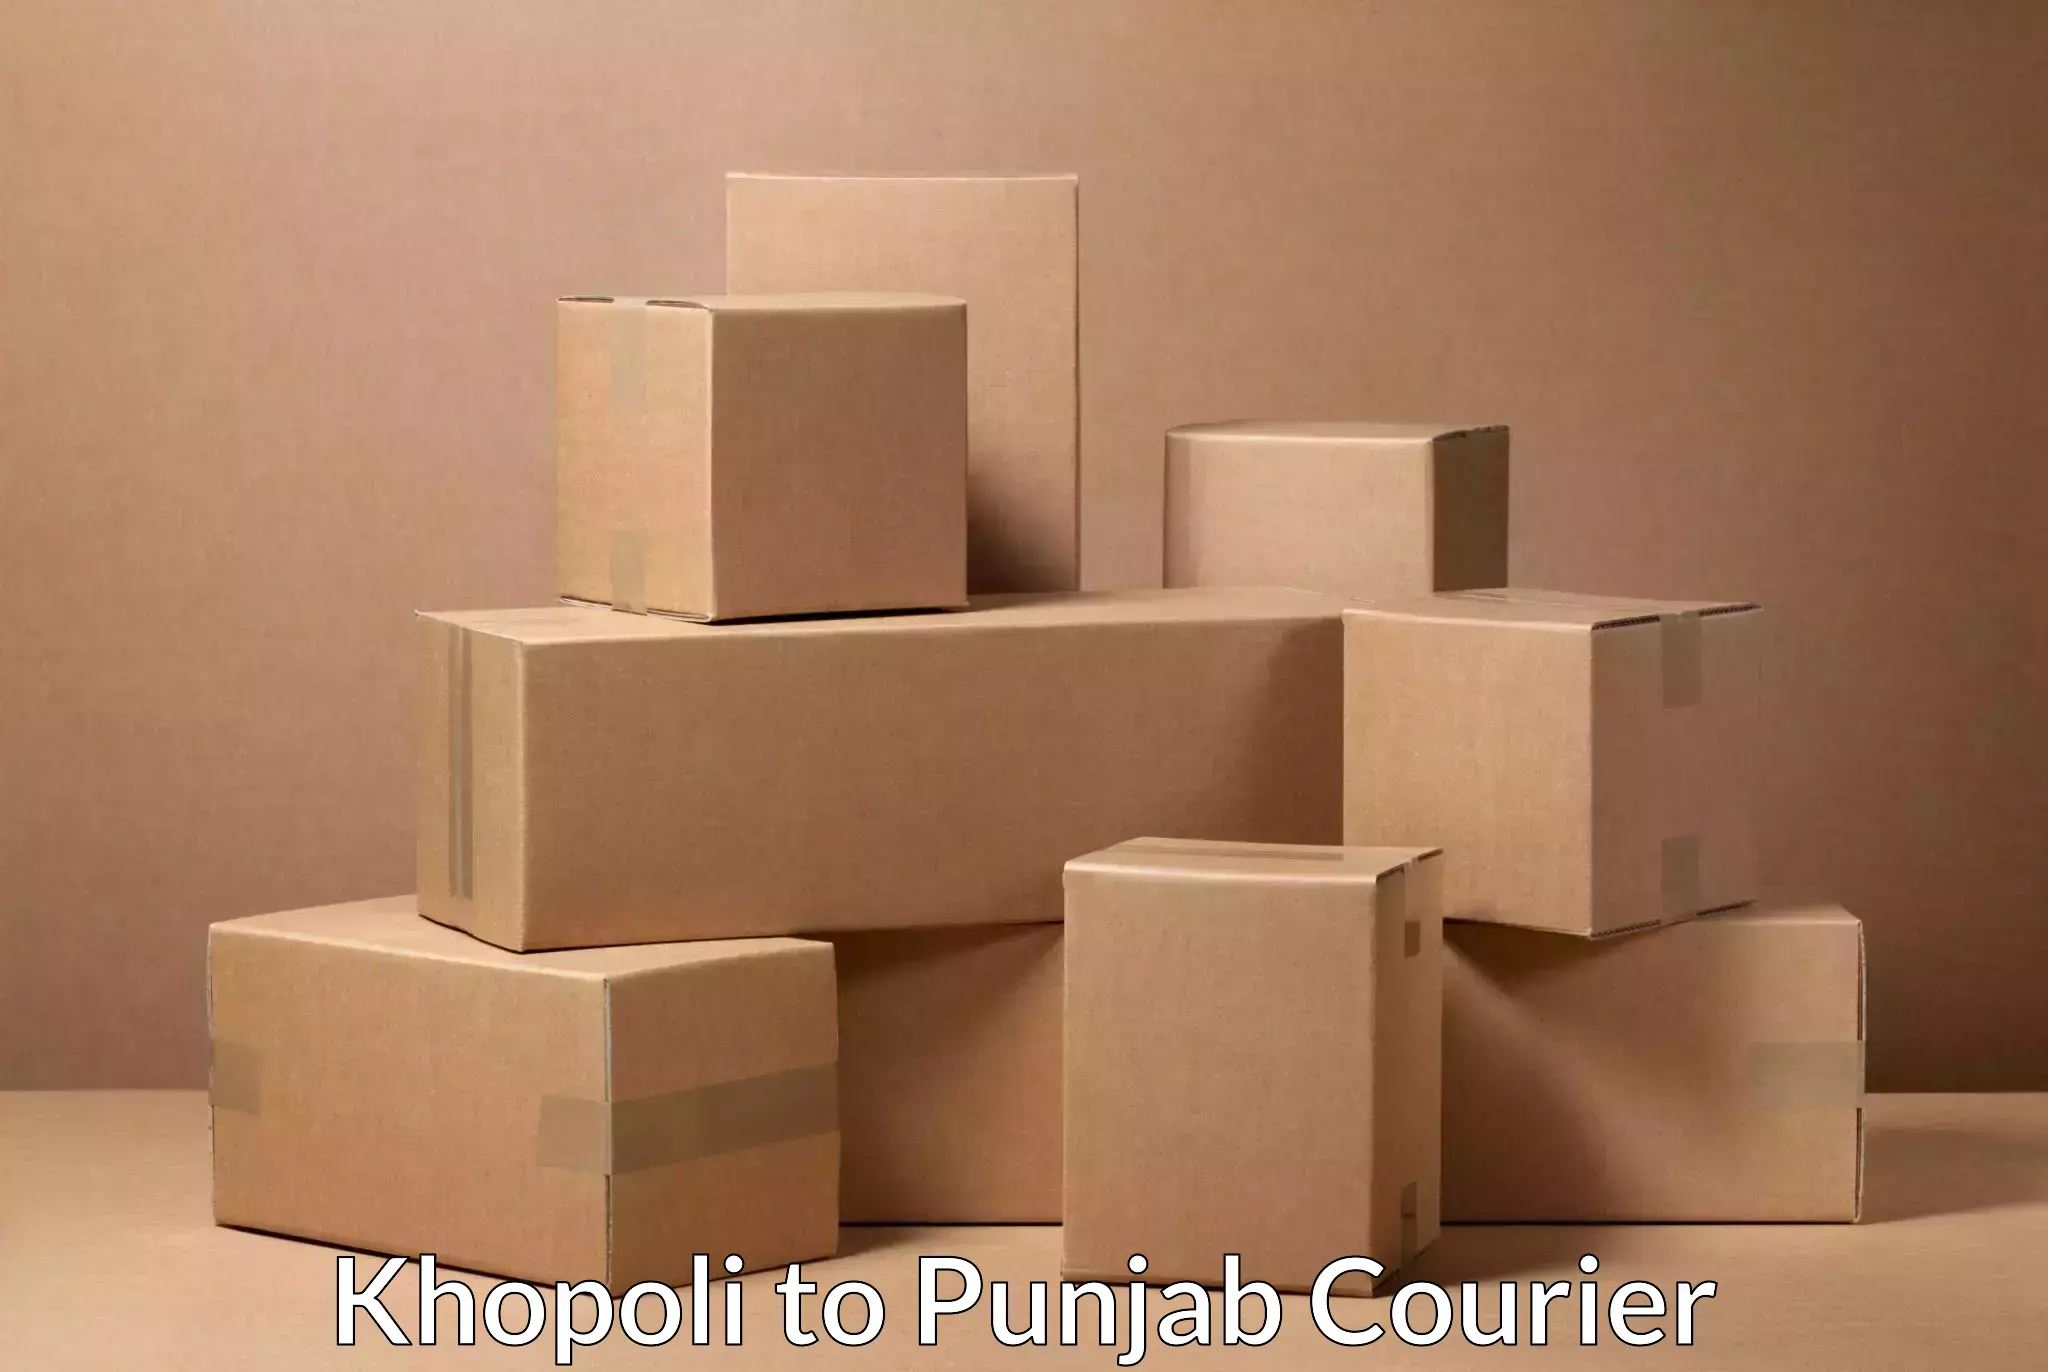 Fast shipping solutions Khopoli to Malerkotla